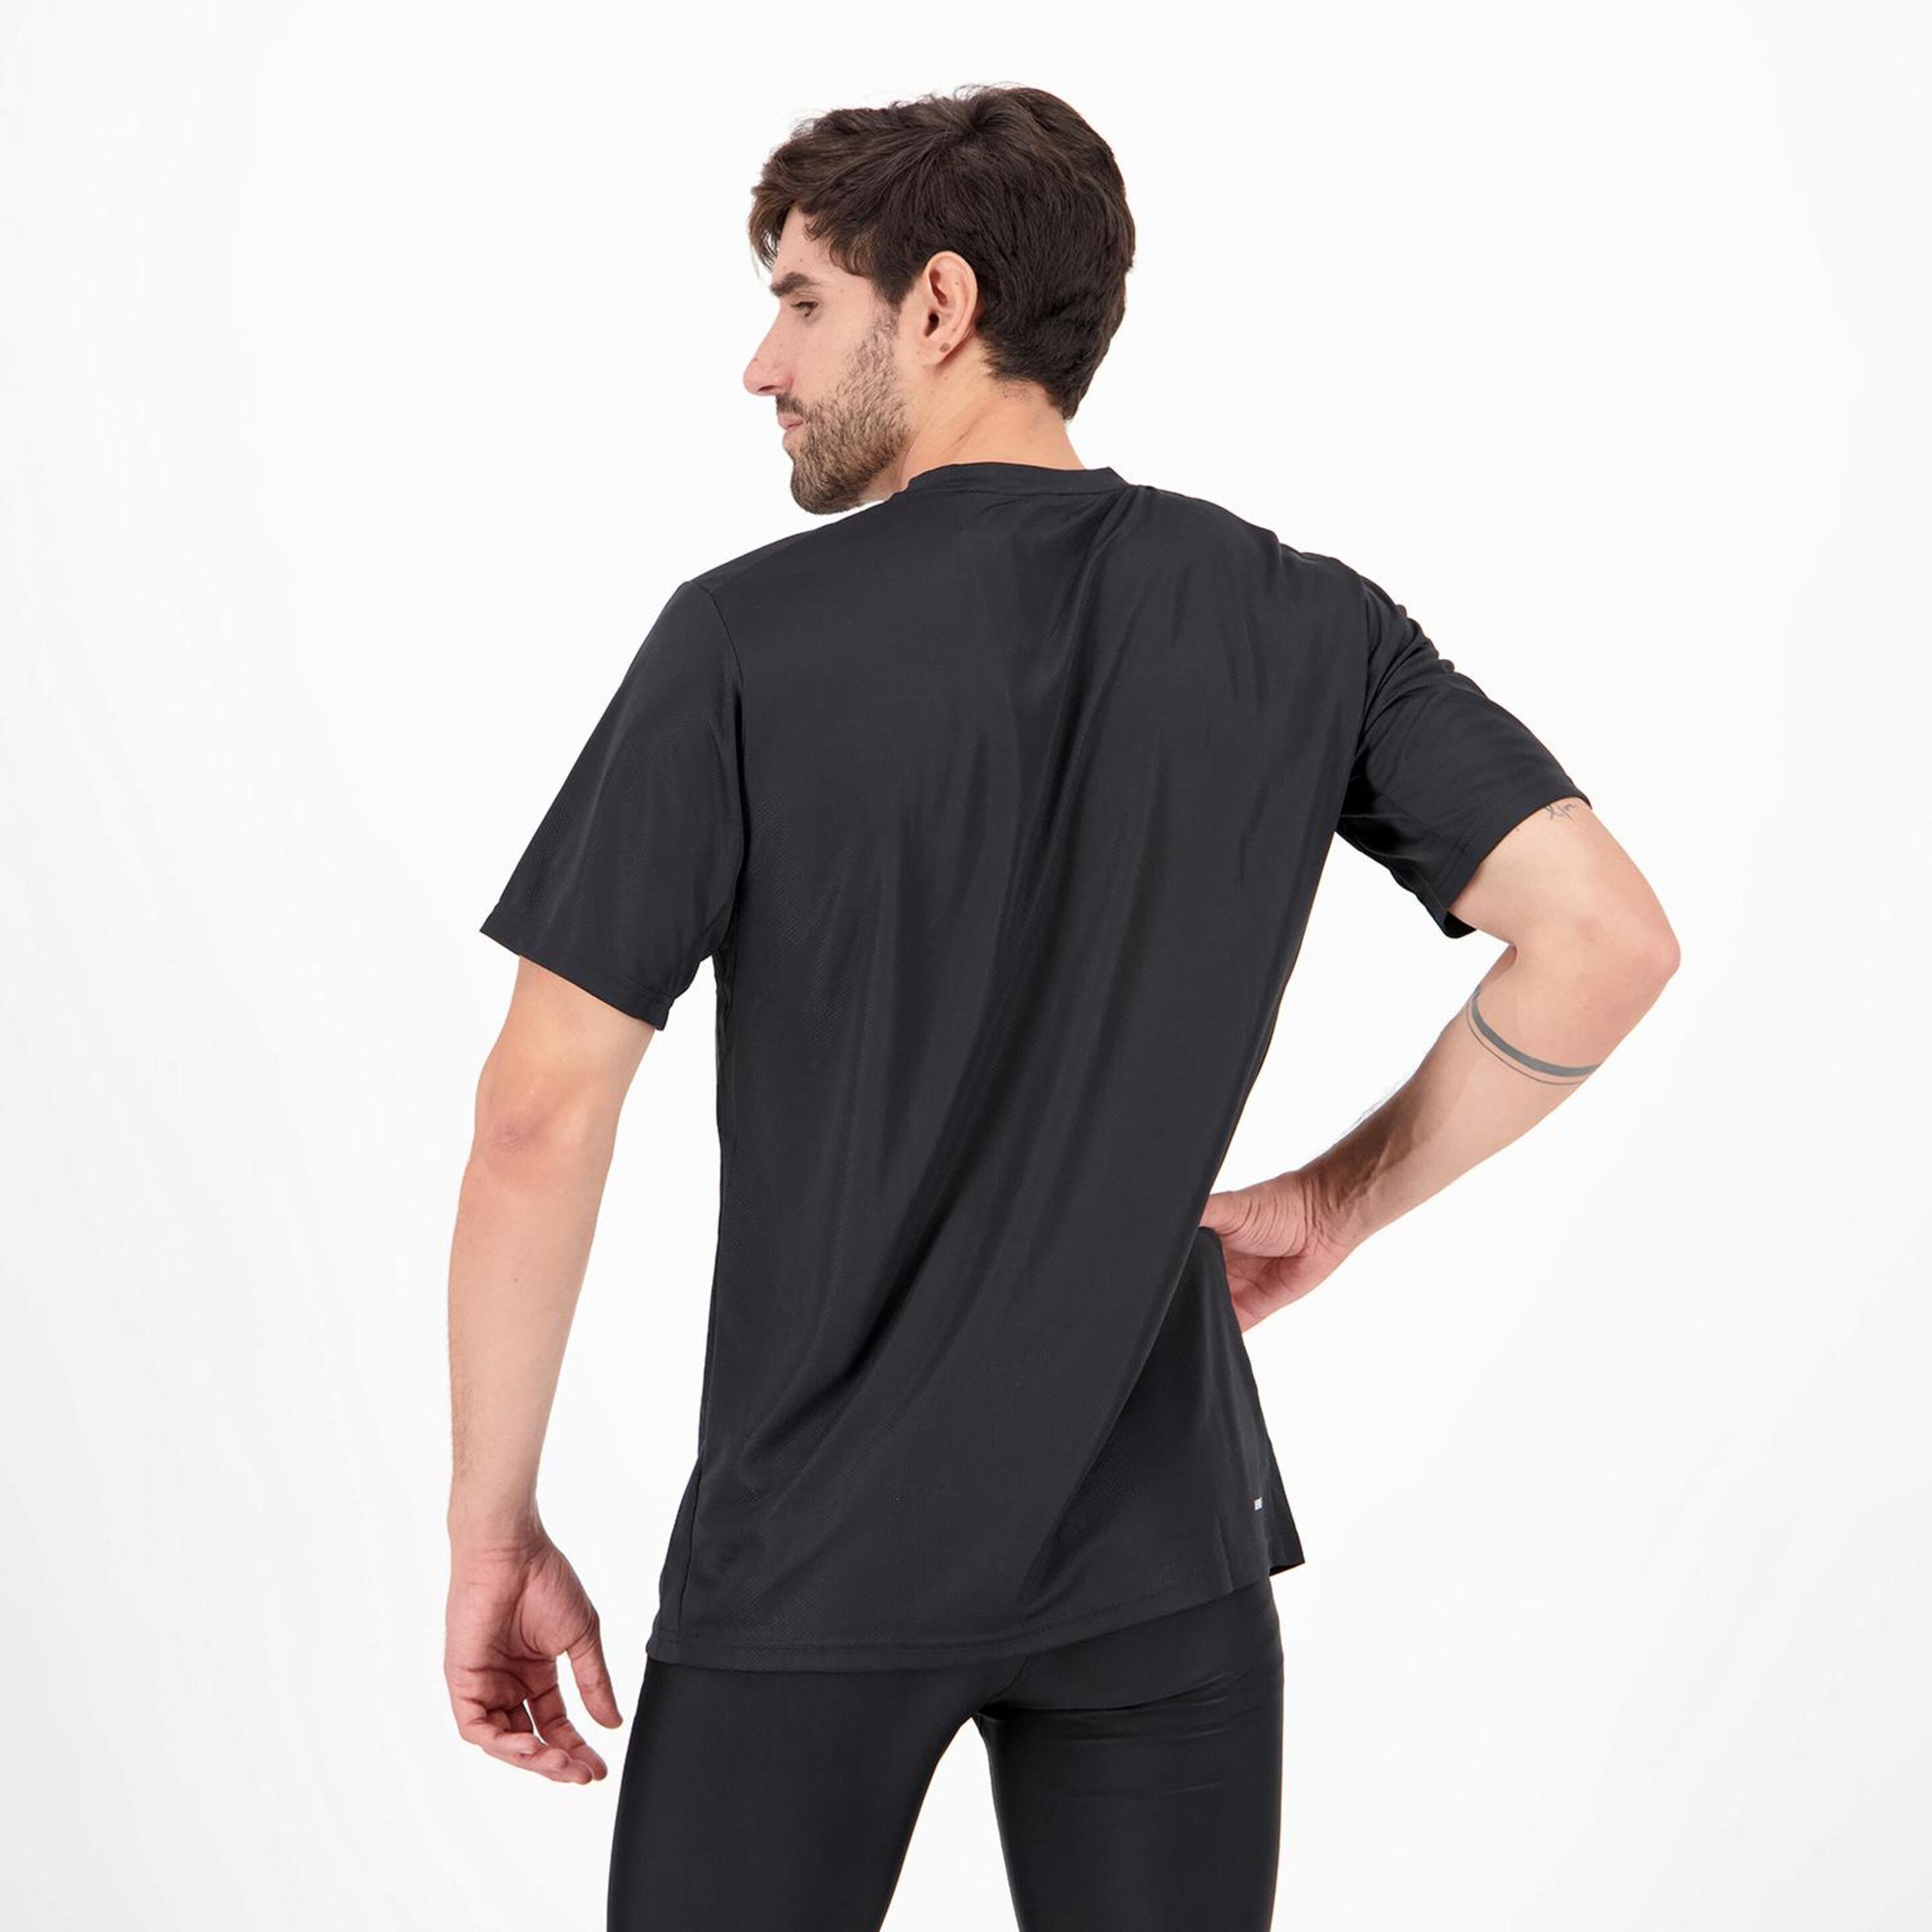 Camiseta adidas - Negro - Camiseta Running Hombre  | Sprinter